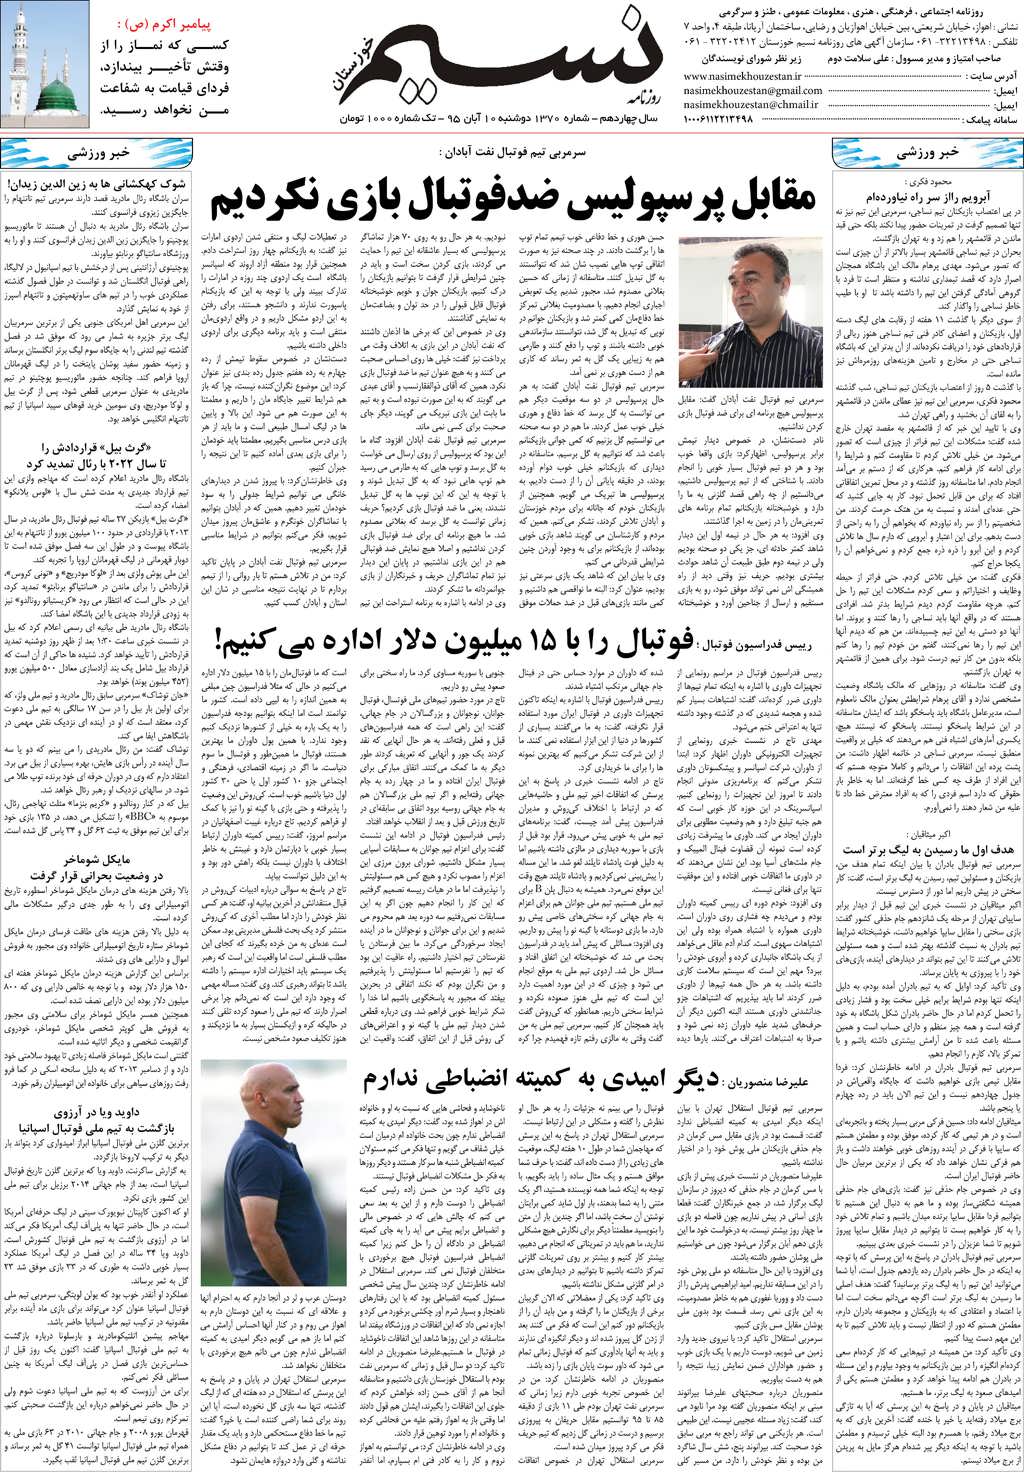 صفحه آخر روزنامه نسیم شماره 1370